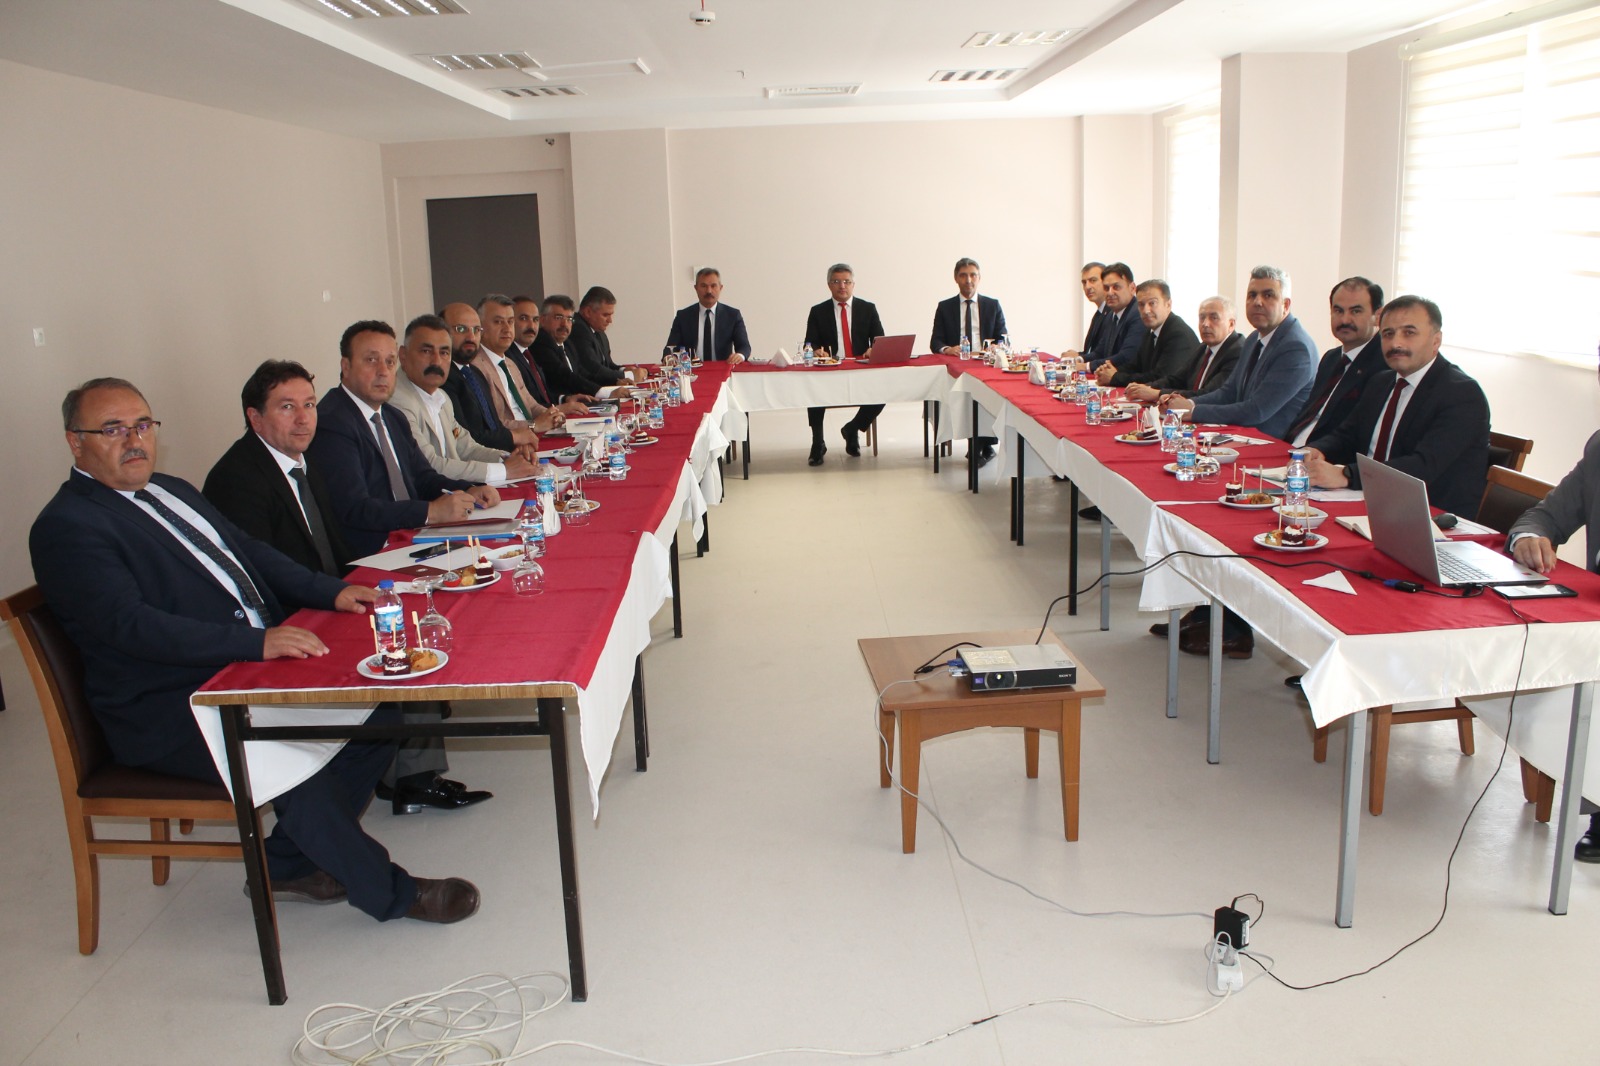 İl Milli Eğitim Müdürü Dr. Murat Ağar Başkanlığında Toplantı Gerçekleştirildi